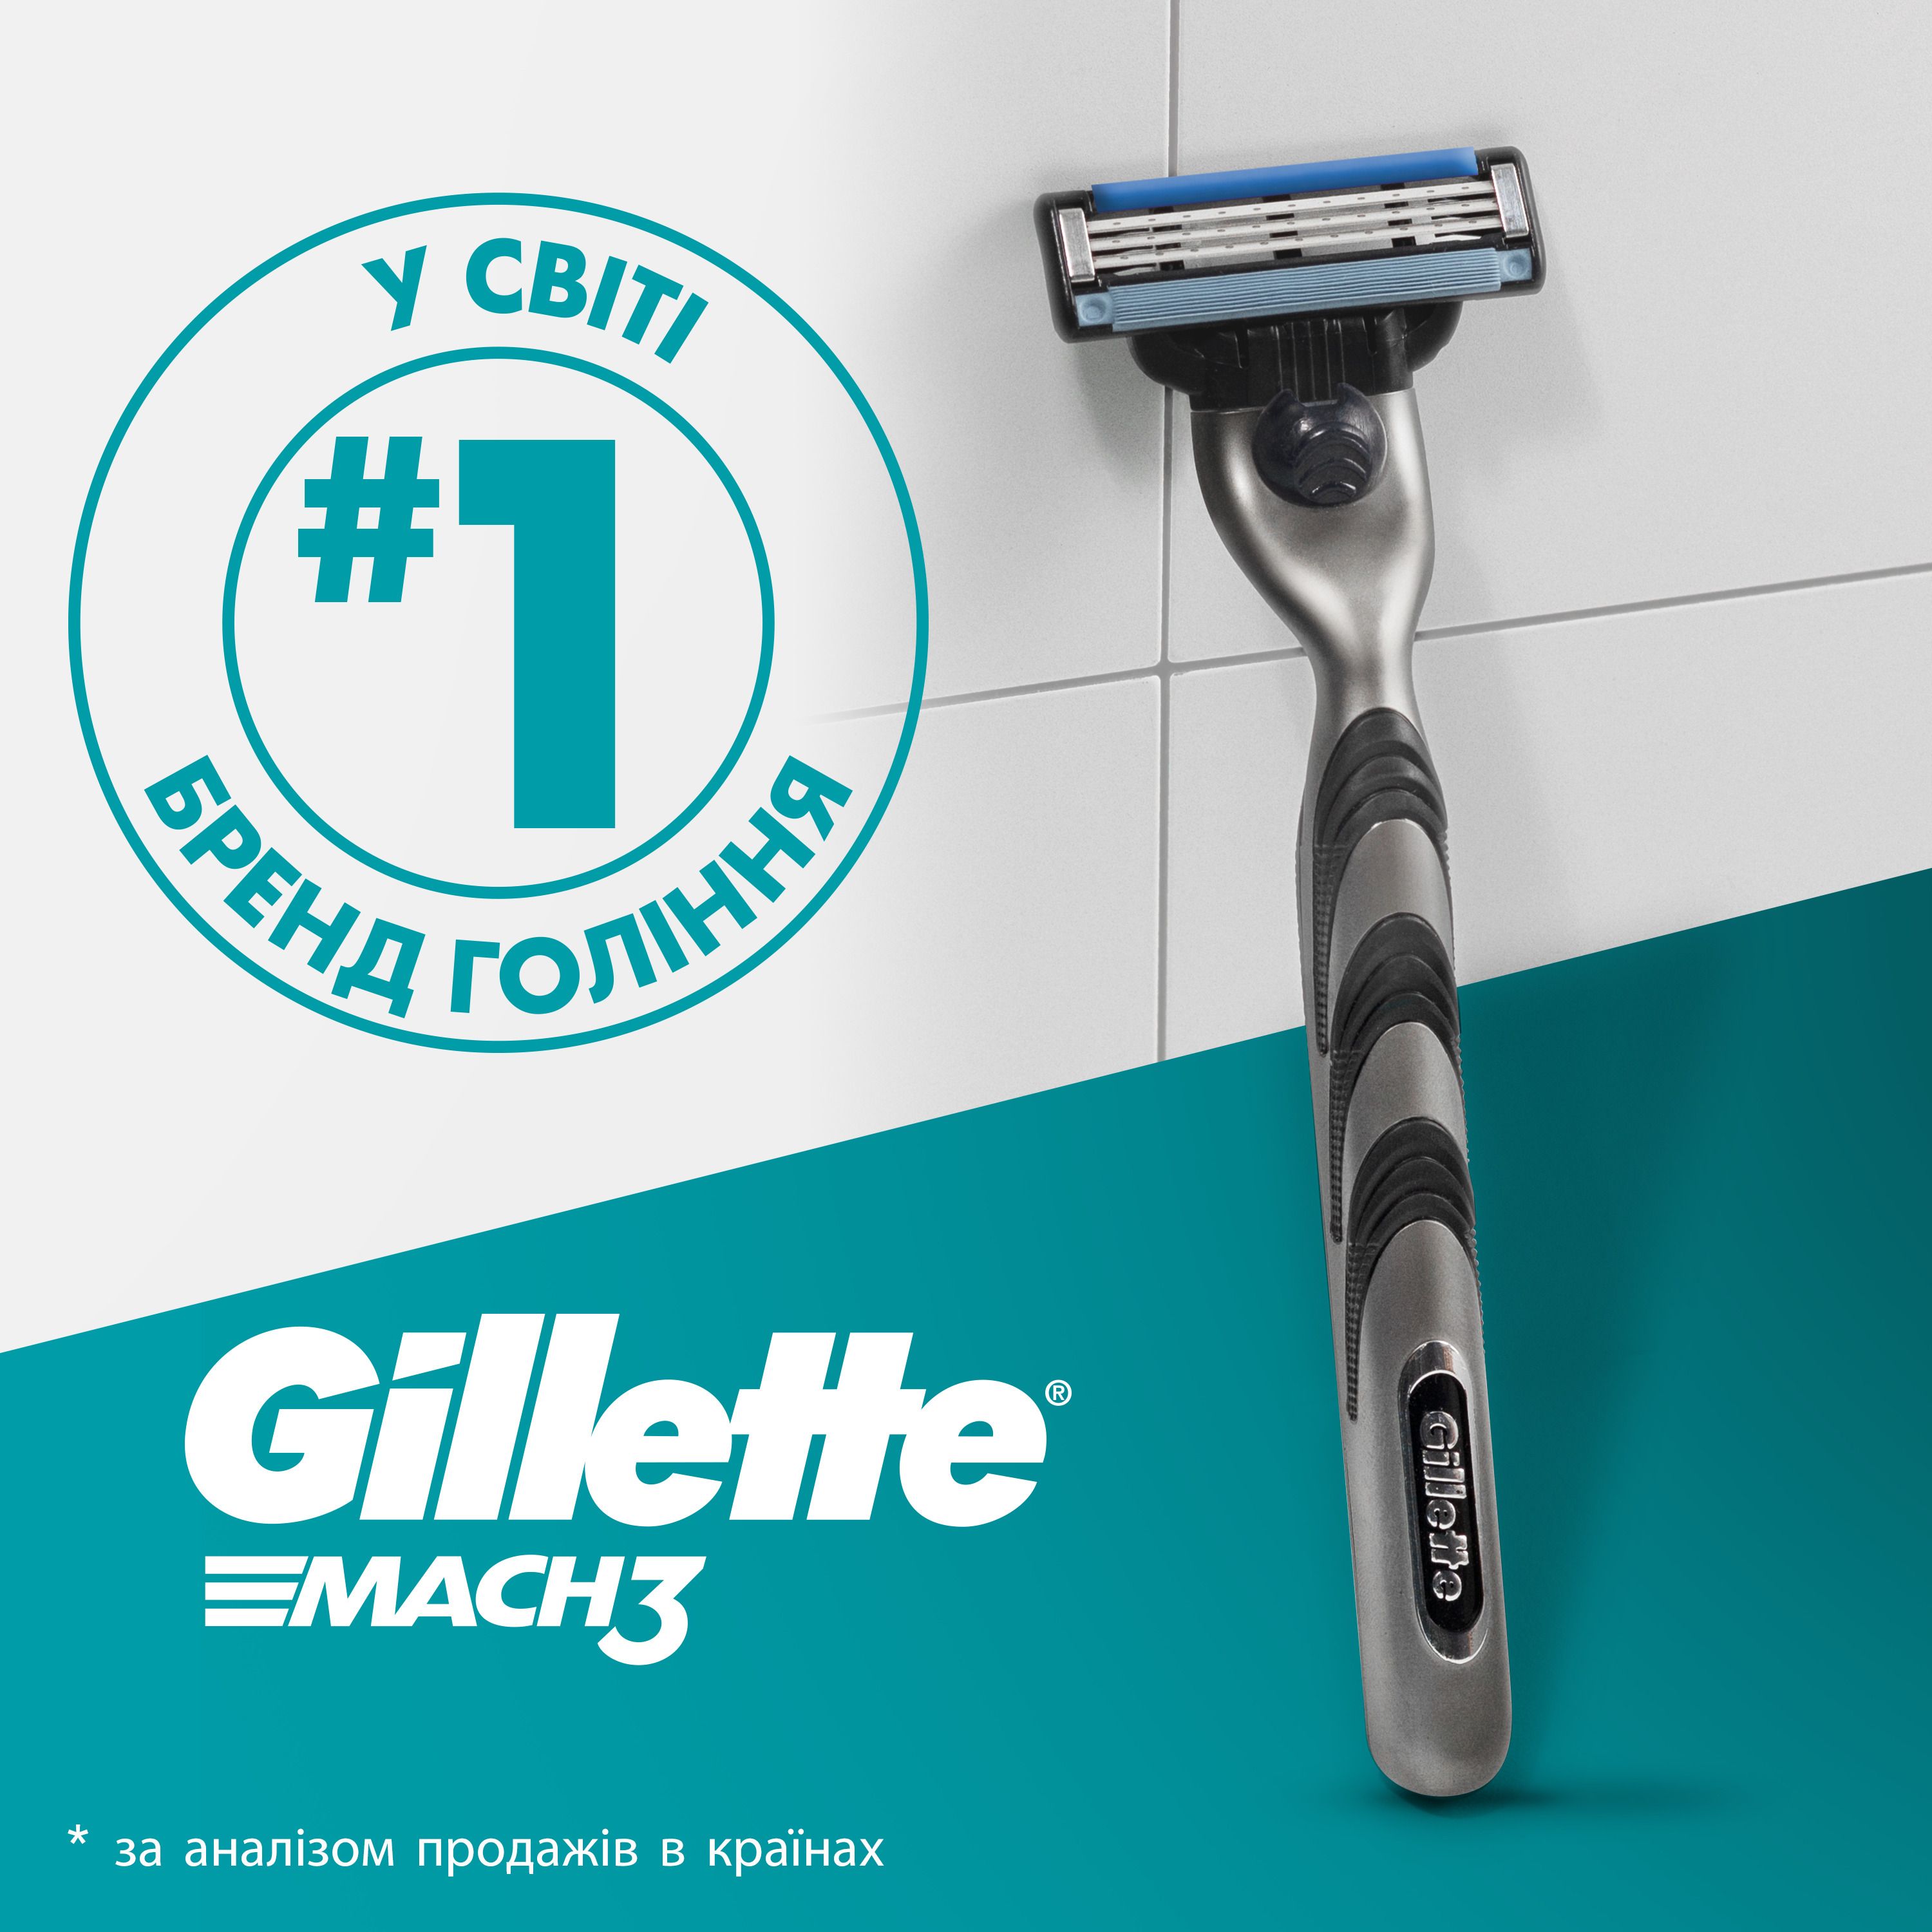 Подарунковий набір для чоловіків Gillette Mach3: бритва + змінні катріджі для гоління 2 шт. + гель для гоління + косметичка - фото 5